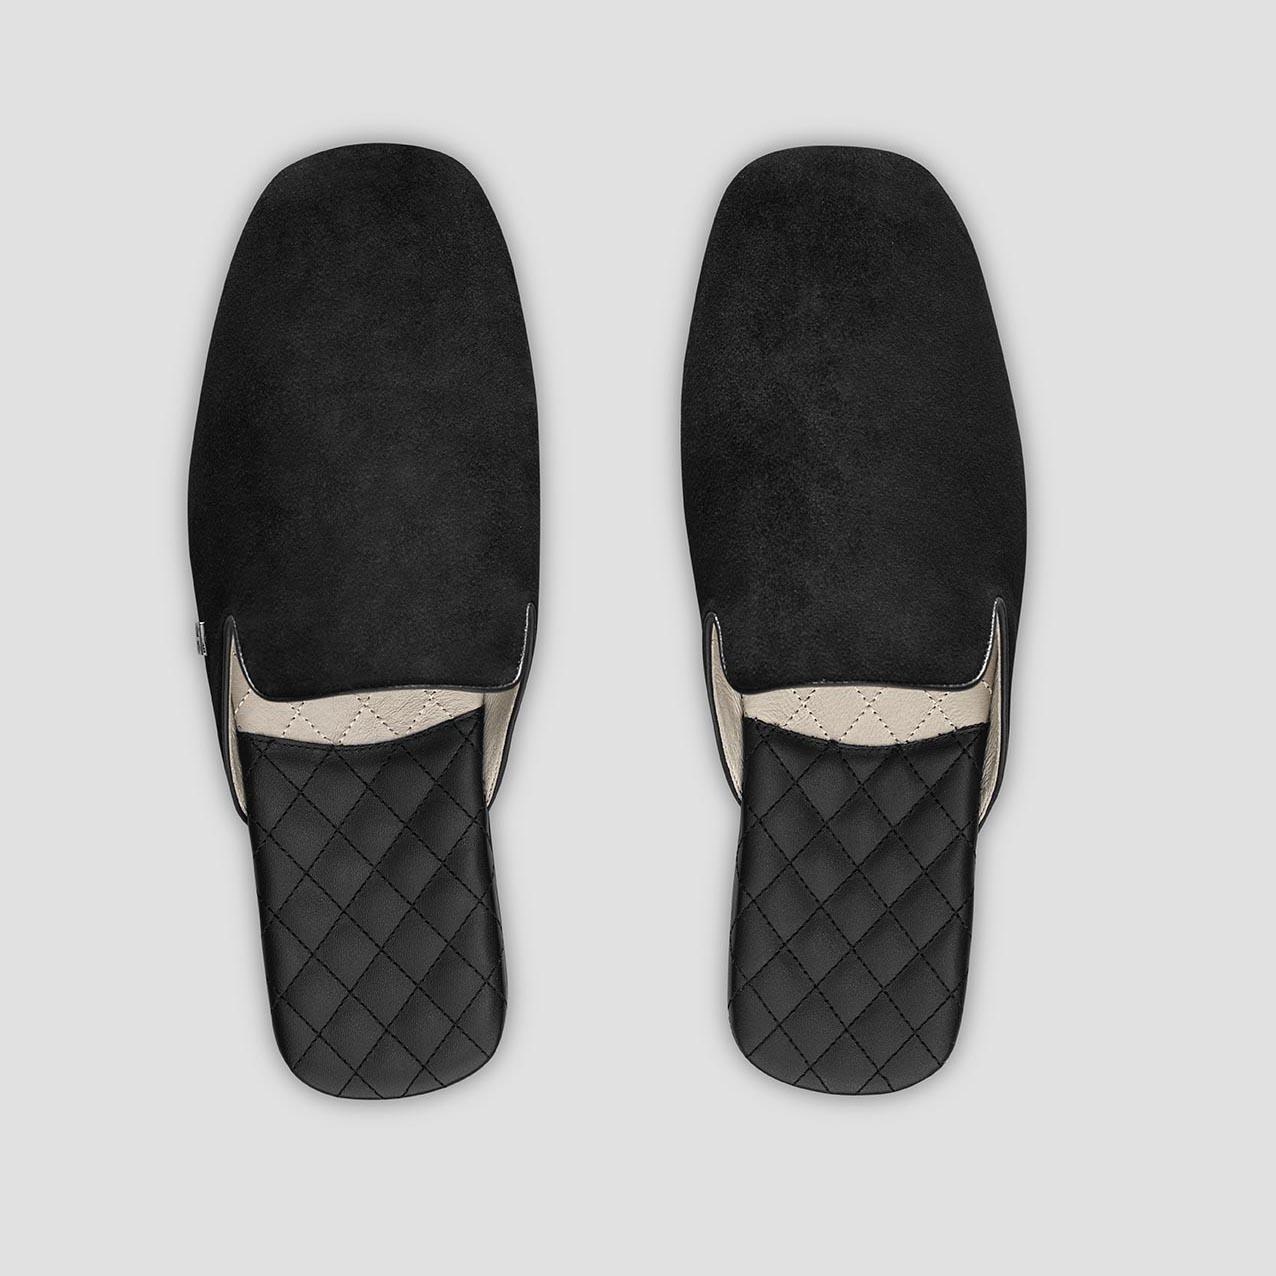 Тапочки Togas Реон черные мужские кожаные, размер 42-43 тапочки togas оливер мужские черные р 46 47